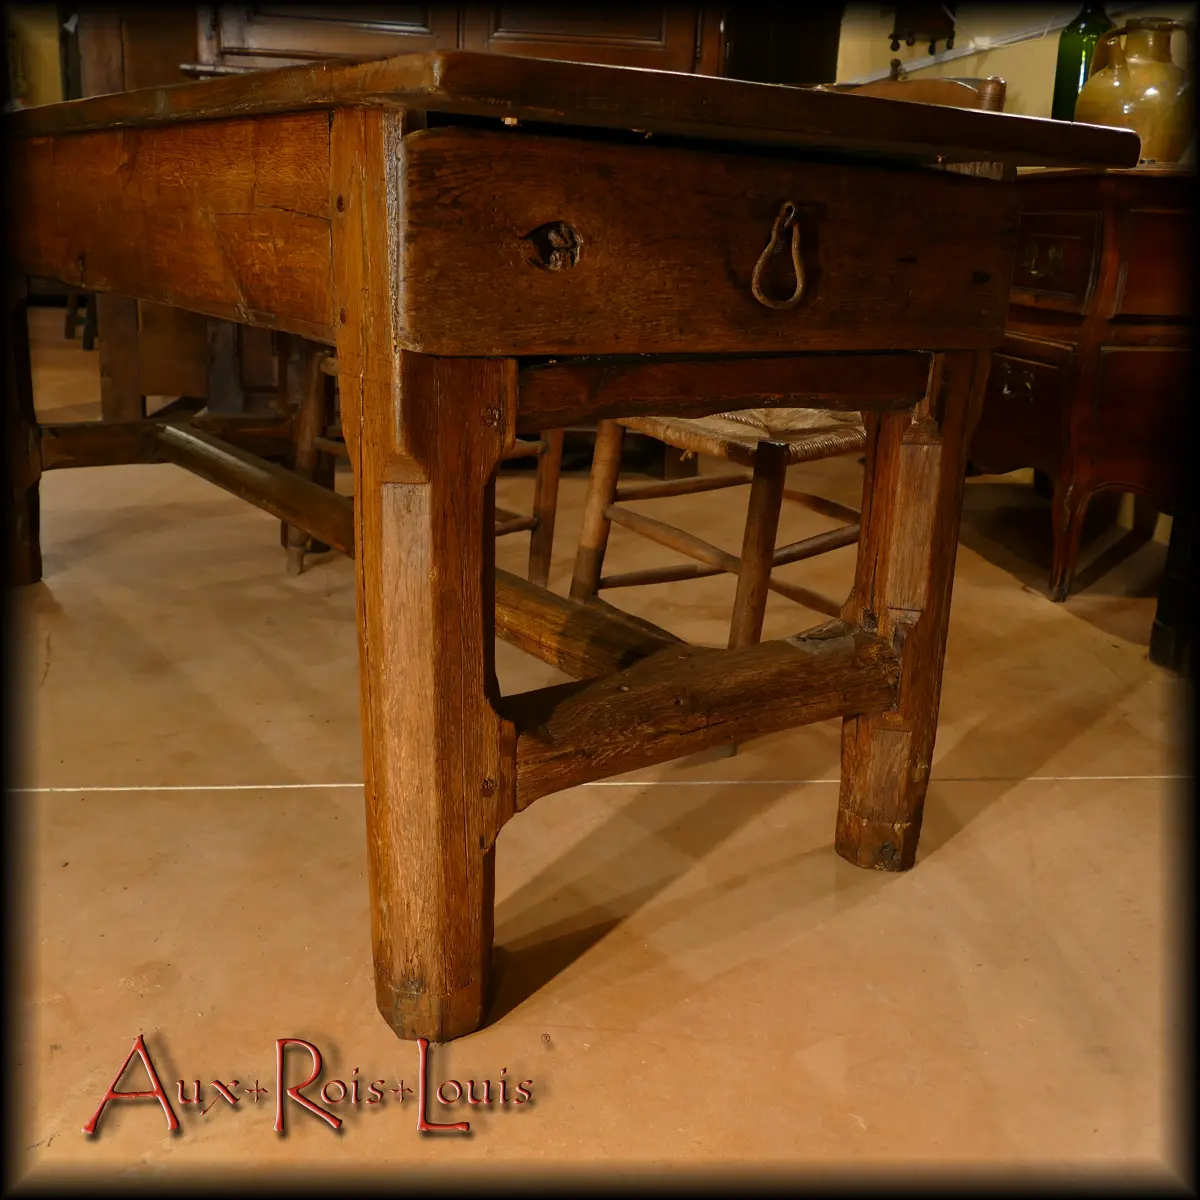 L’autre extrémité de cette table auvergnate, située donc 1 mètre 86 plus loin, dispose également d’un tiroir qui pouvait au XVIIIᵉ siècle recevoir les ustensiles de cuisine.